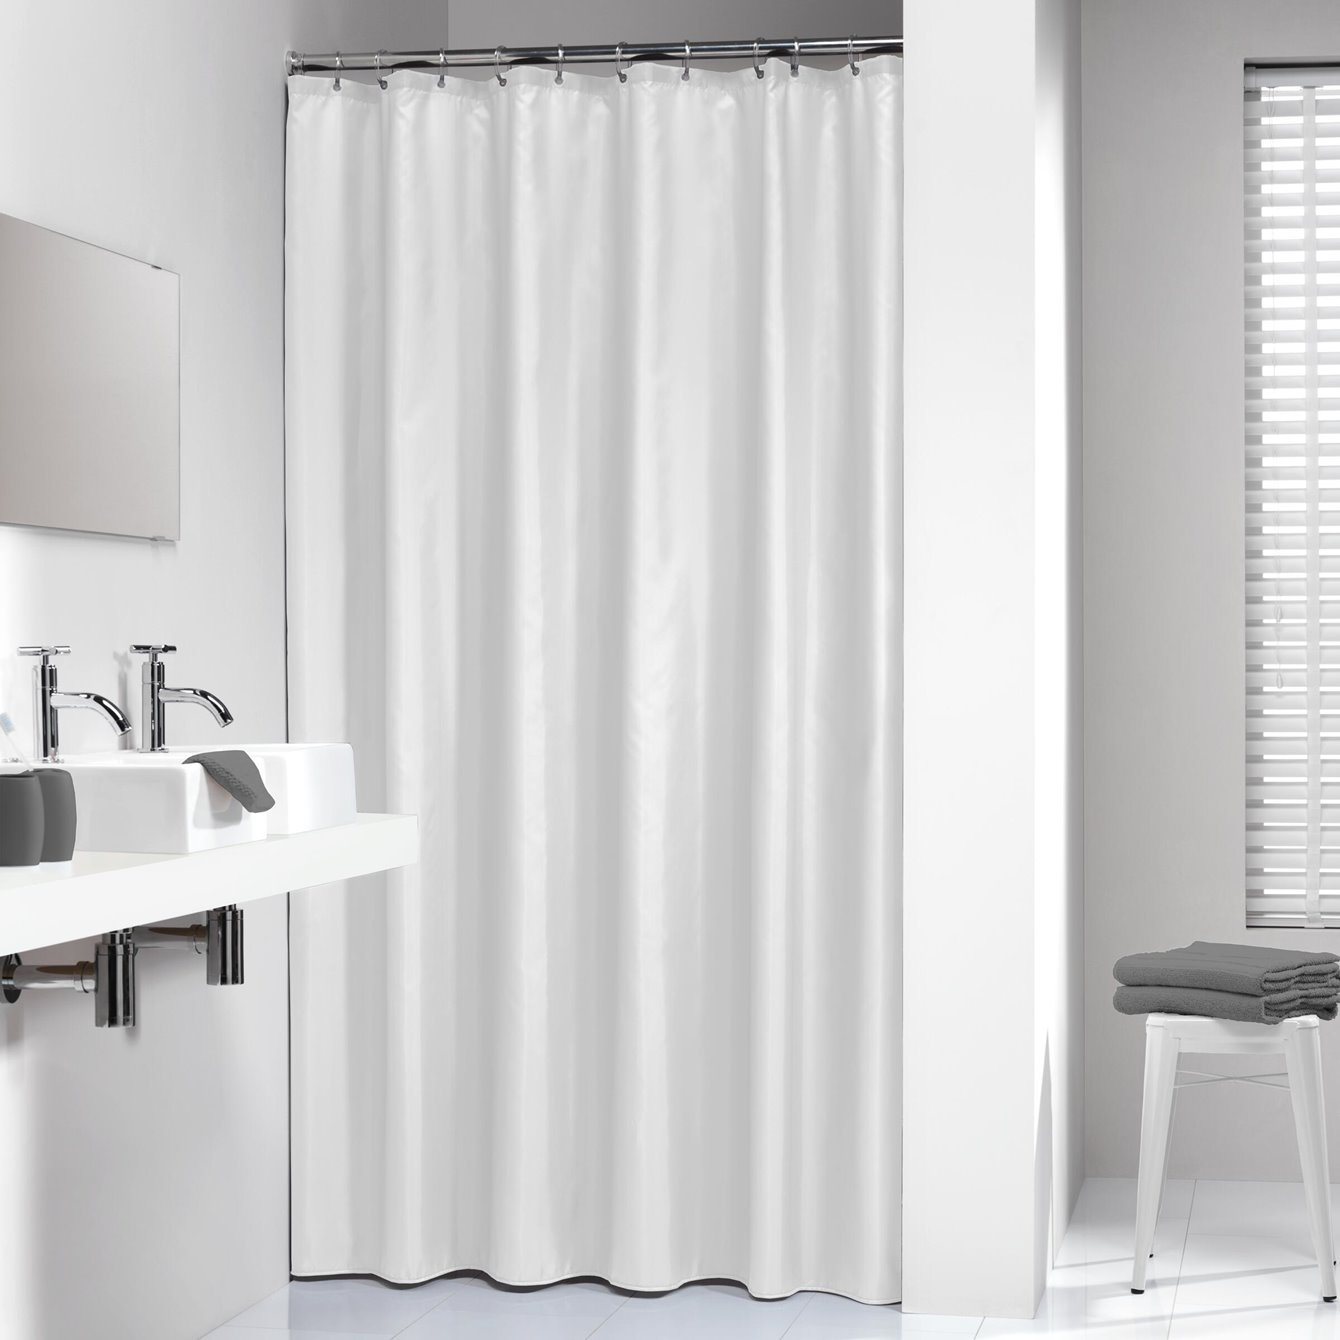 Κουρτίνα Μπάνιου Πλαστική (120x200) Με Κρίκους SealSkin Granada White